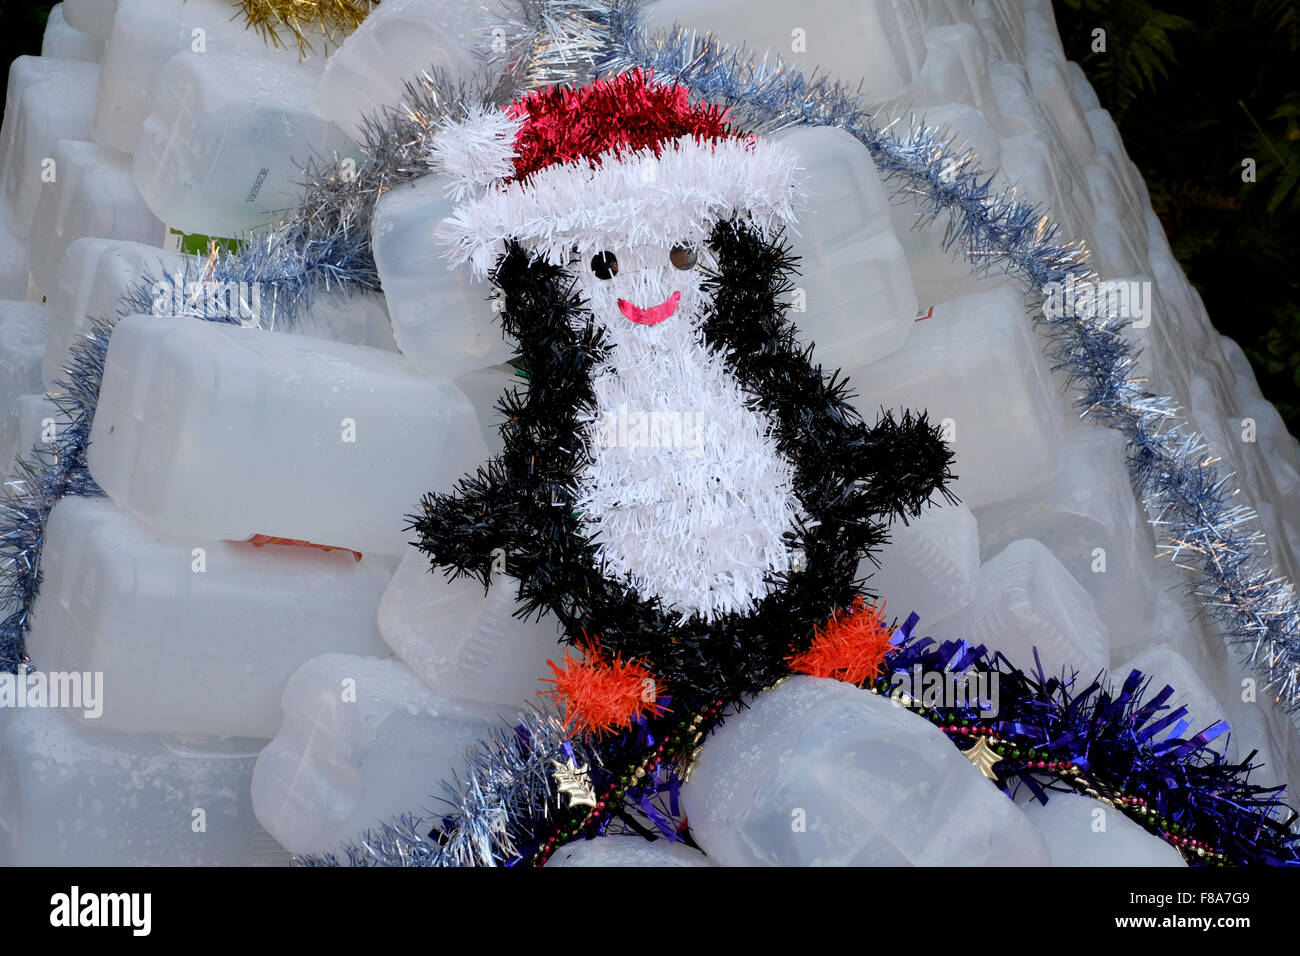 Weihnachtsschmuck Garten Iglu aus Kunststoff Milchtüten hergestellt  Stockfotografie - Alamy